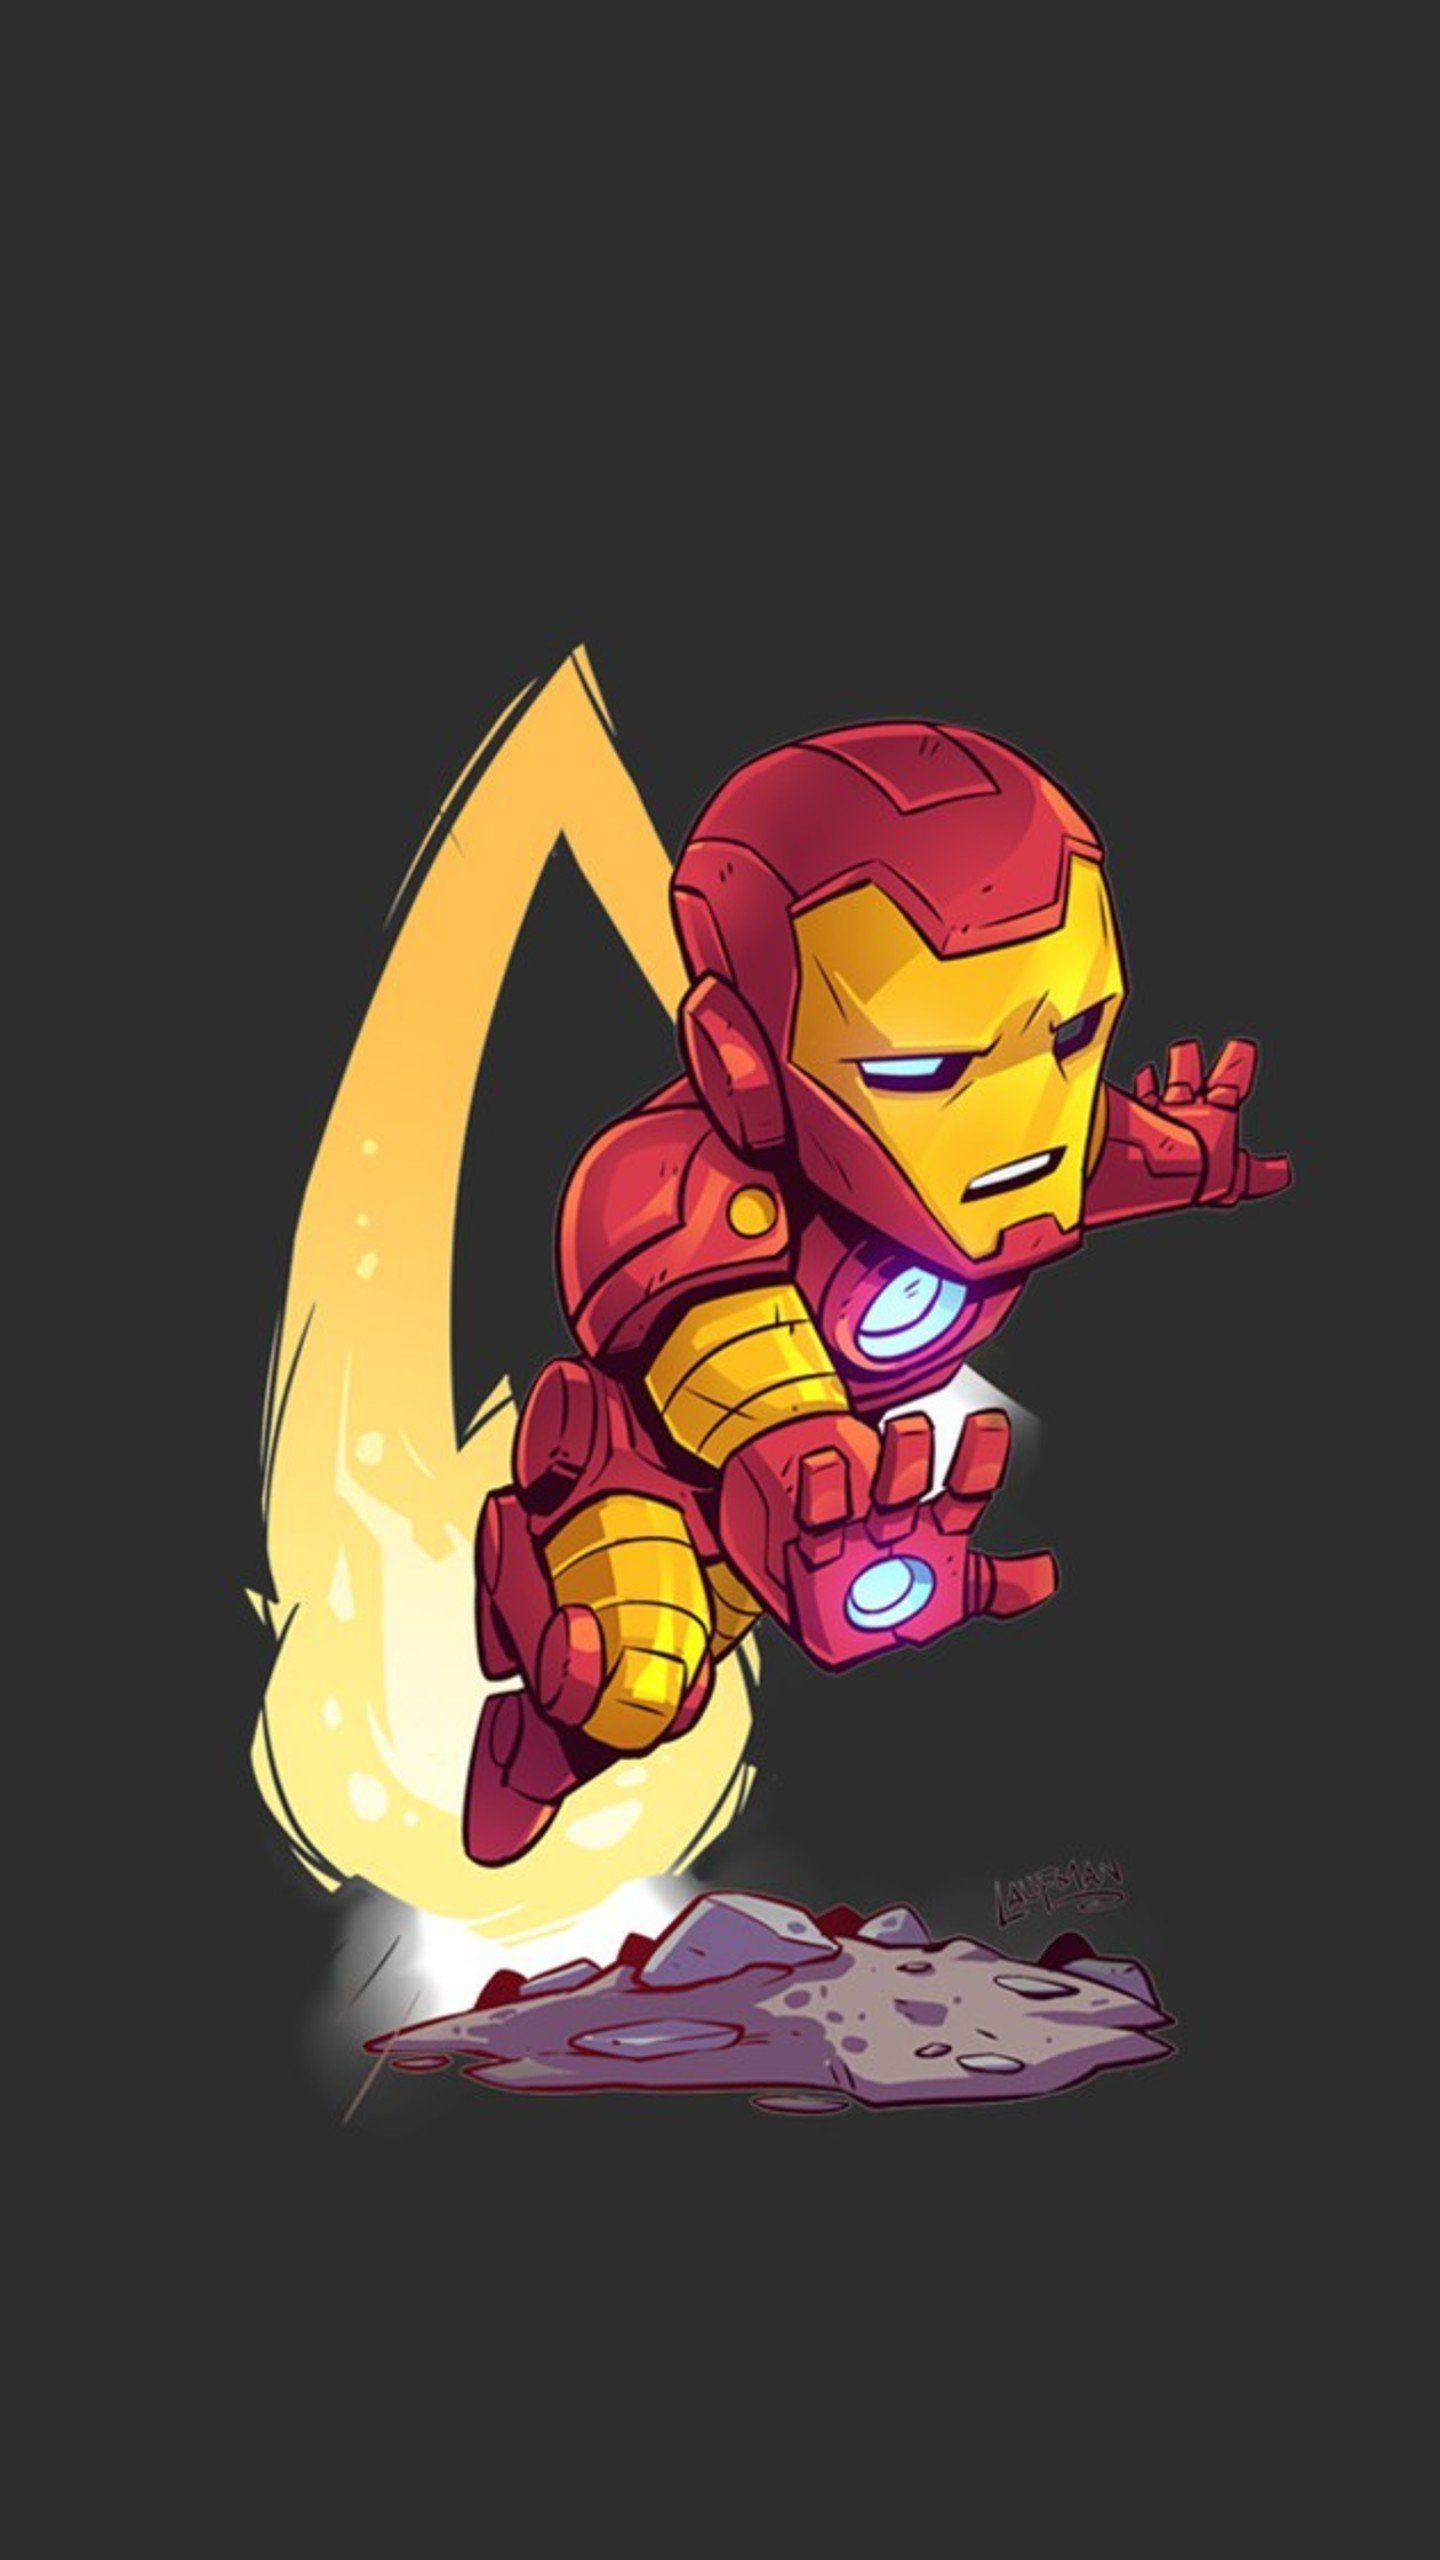 1440x2560 Iron Man Minimal Art, HD Superheroes Wallpaper Photo and Picture in 2020. Phim hoạt hình người sắt, Hình nền Marvel, Hình nền truyện tranh Marvel